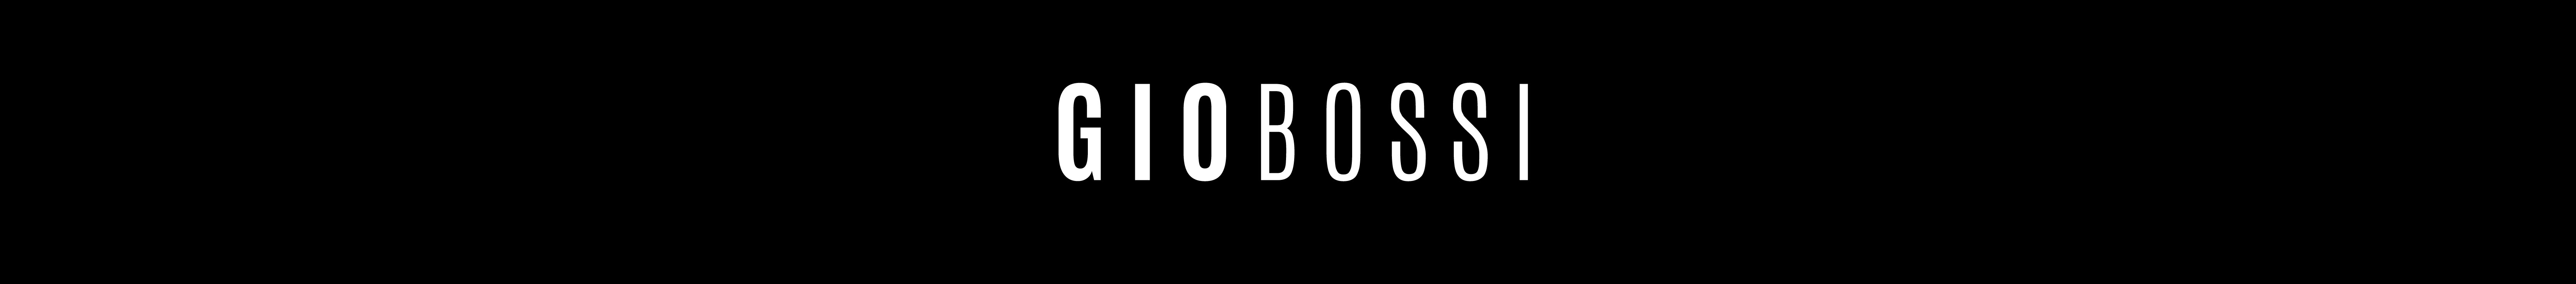 GIO_ BOSSI's profile banner